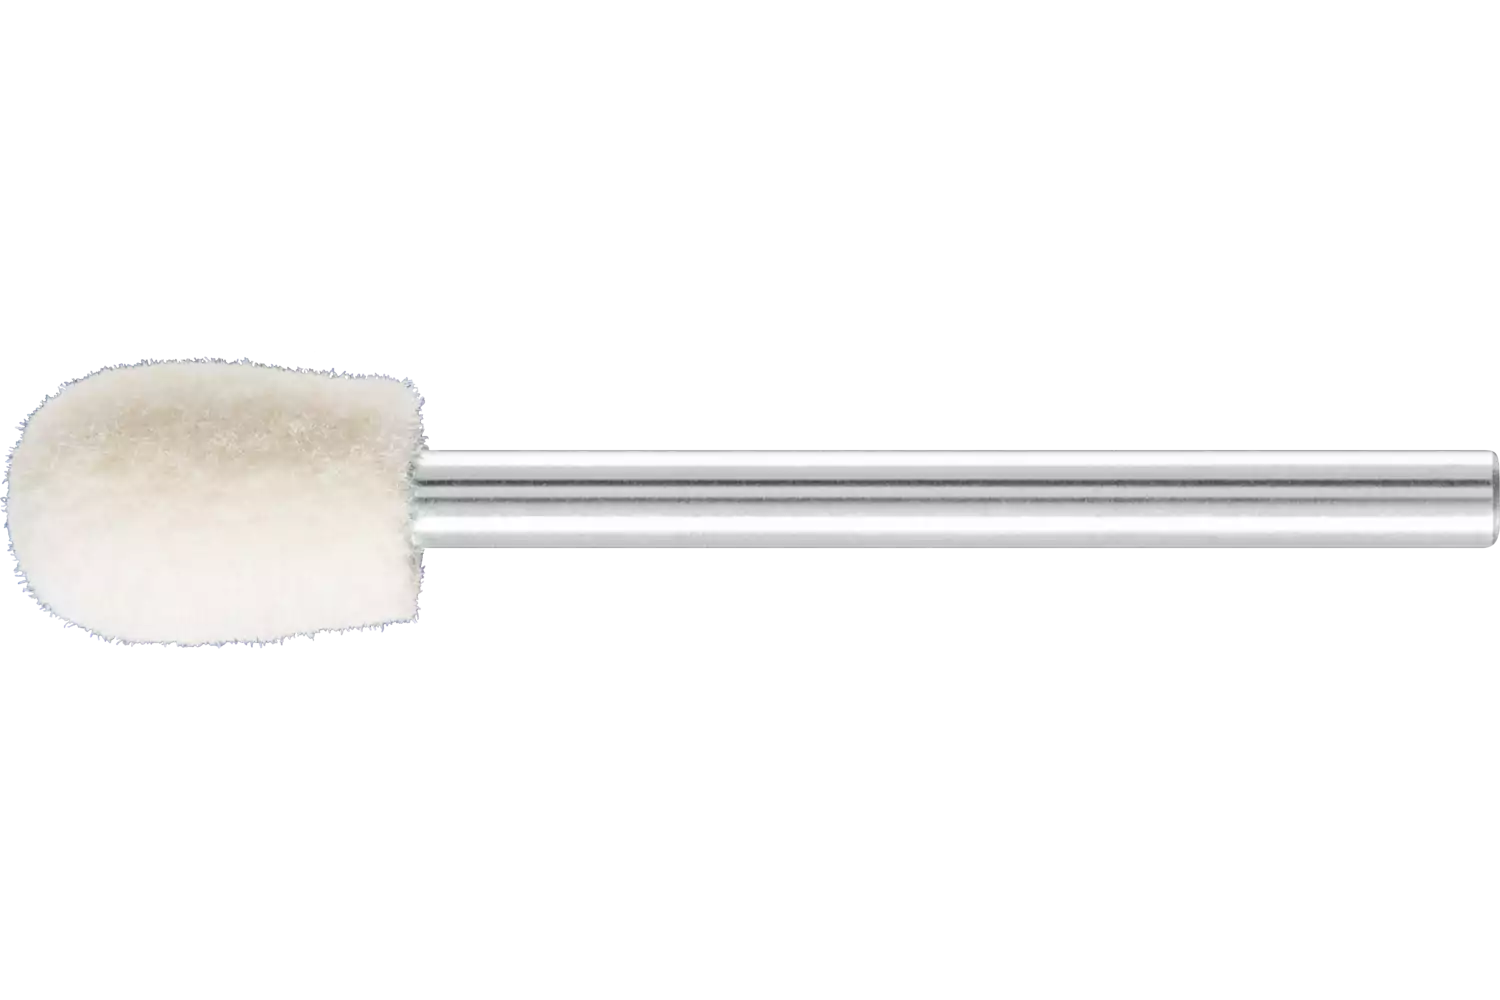 Feltri con gambo per lucidare medio-duri forma a goccia Ø 8x12 mm, gambo Ø 3 mm 1